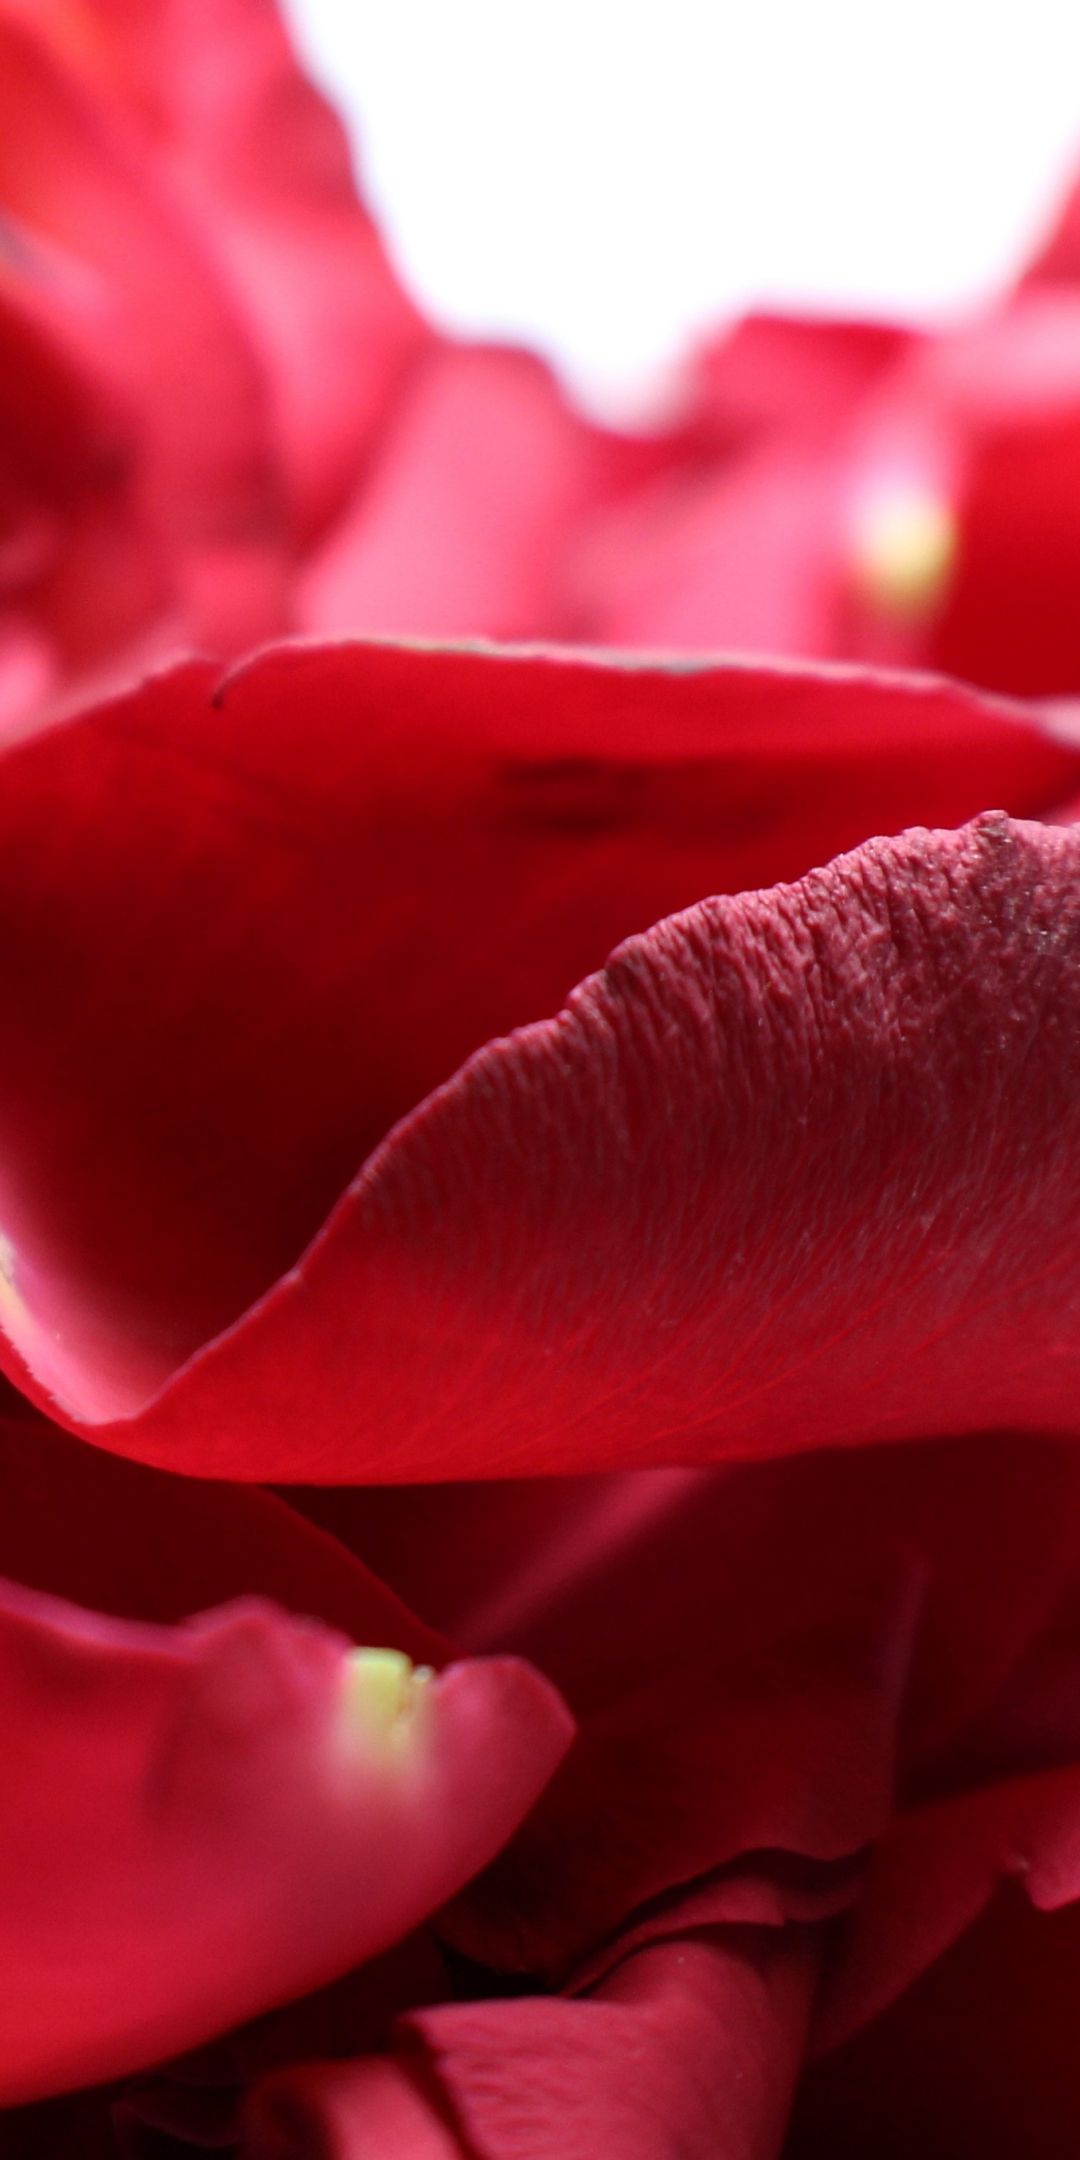 Petals rose, close up, 1080x2160 wallpaper